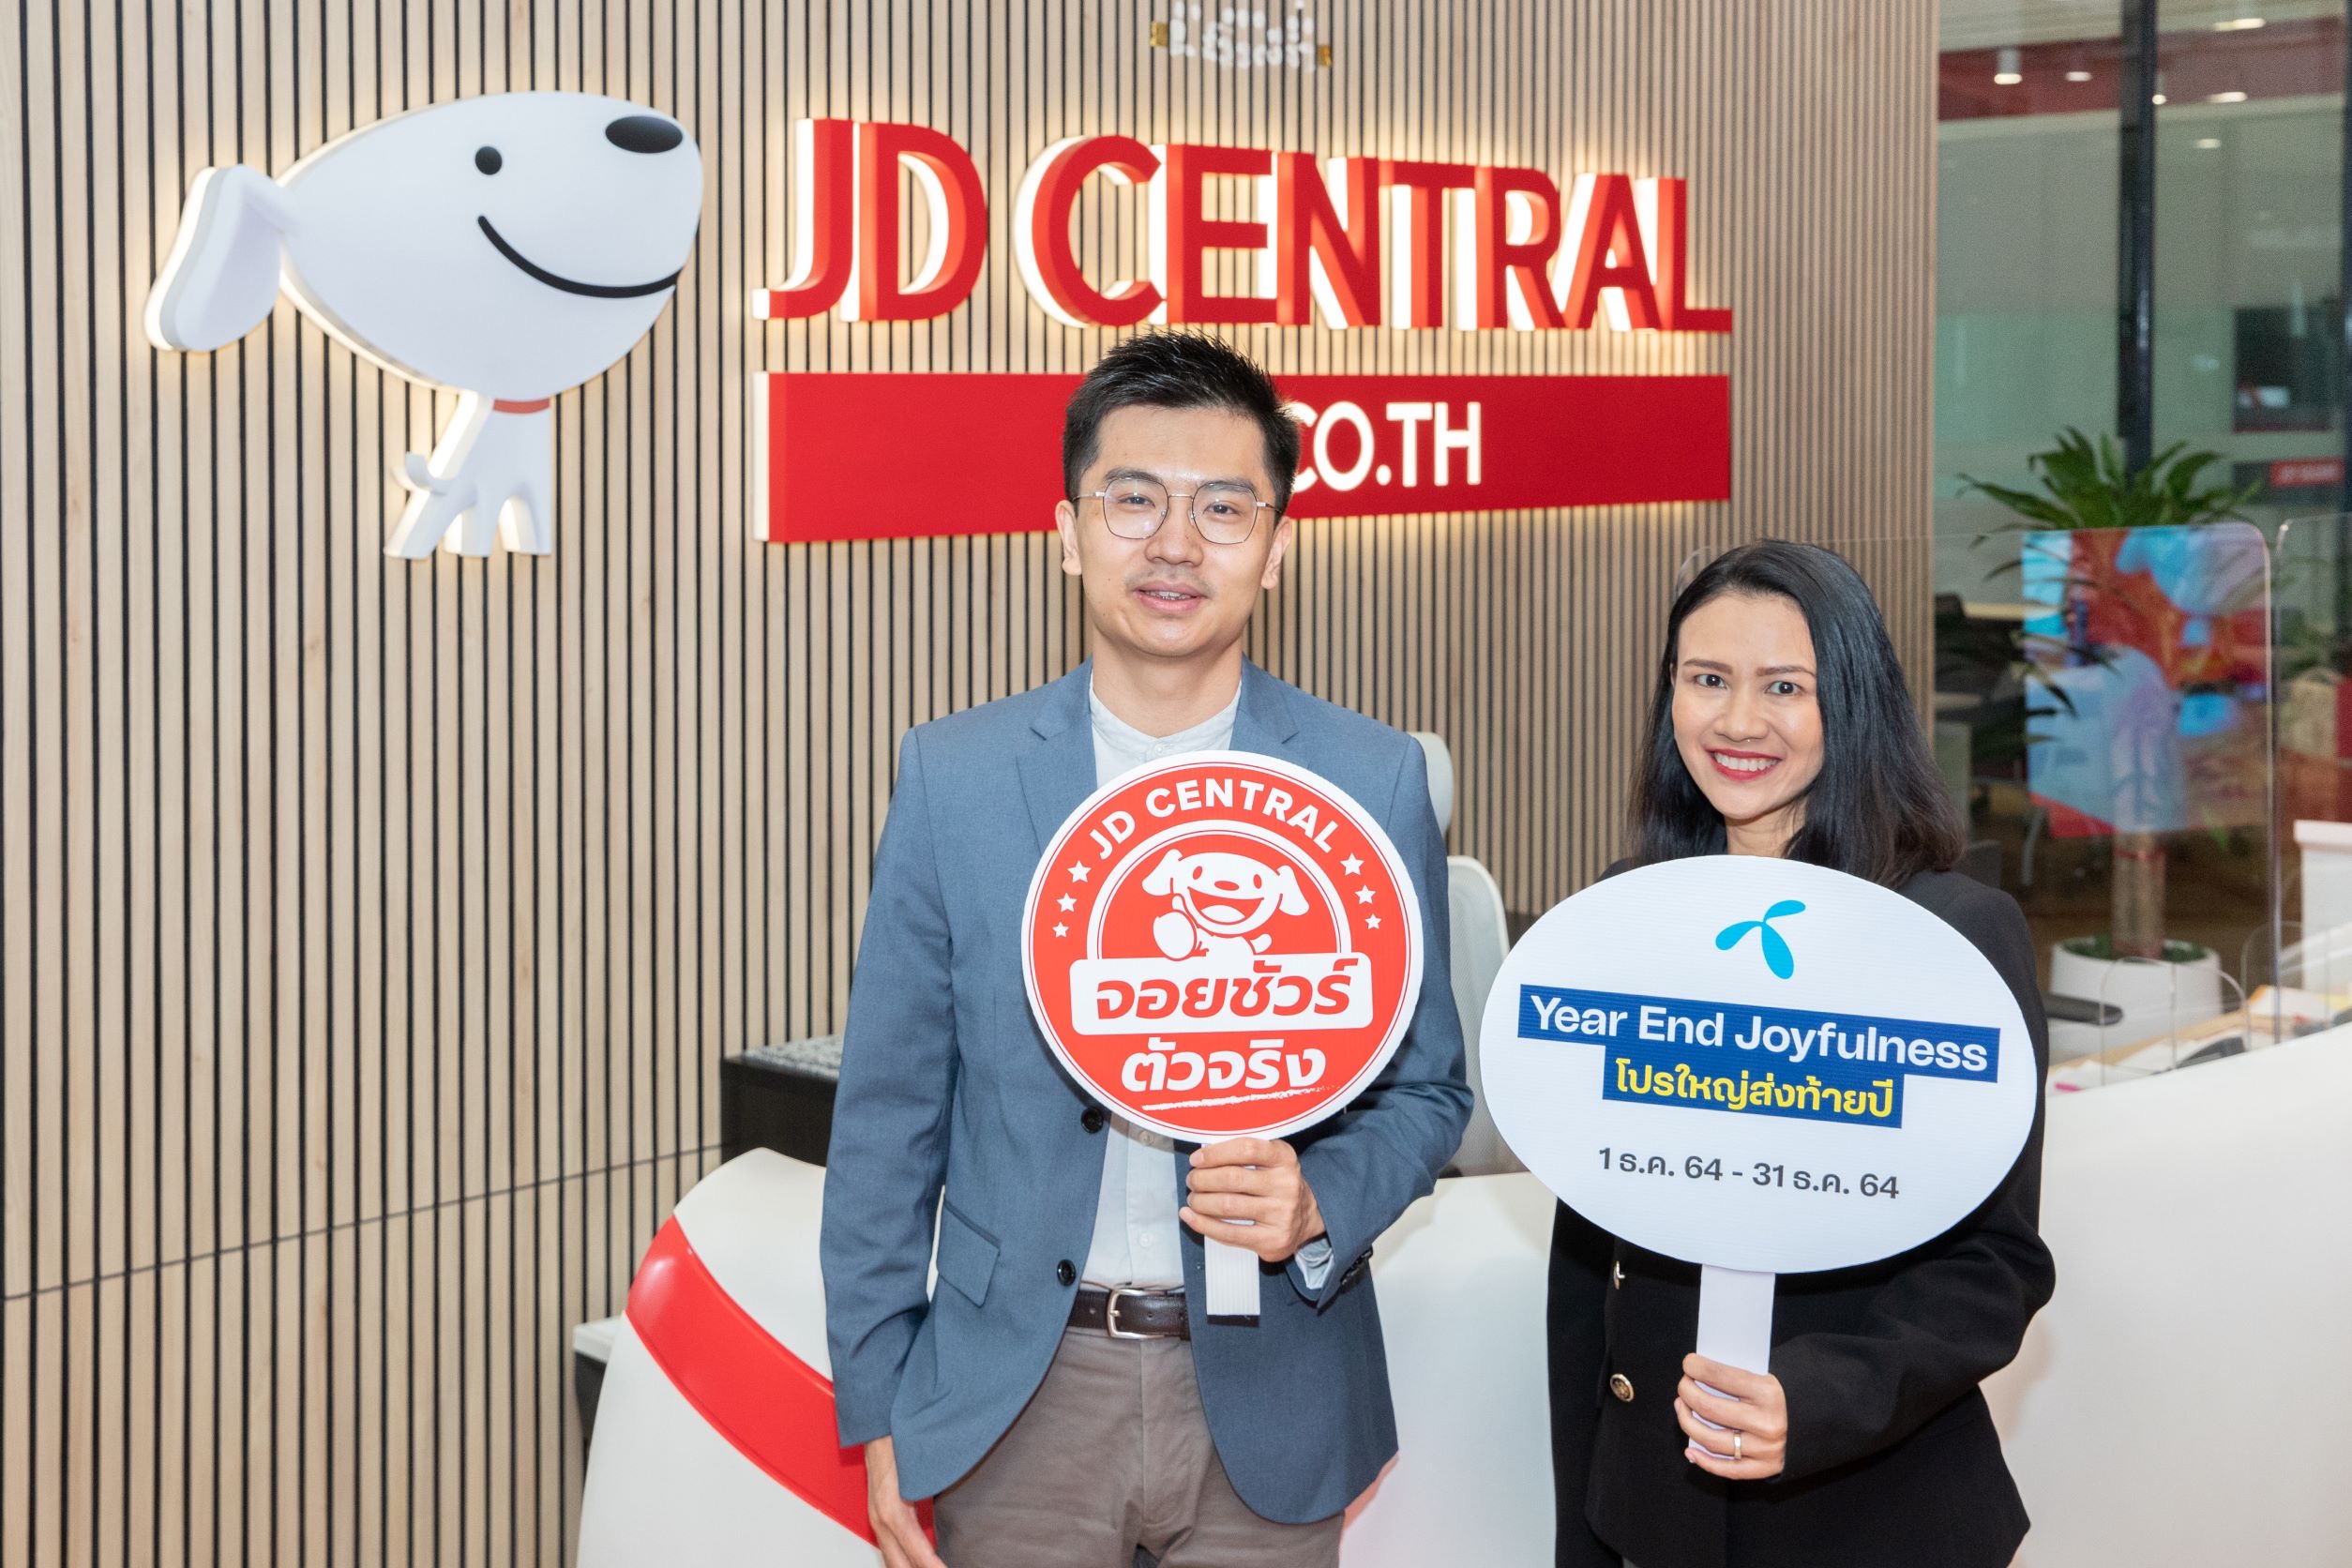 ดีแทค แท็คทีม เจดี เซ็นทรัล ส่งแคมเปญใหญ่ส่งท้ายปี “Year End Joyfulness กับ dtac x JD CENTRAL” กับ 2 โปรโมชันสุดปัง เติมความสุขให้คนไทยได้จอยชัวร์ตลอดเดือนธ.ค